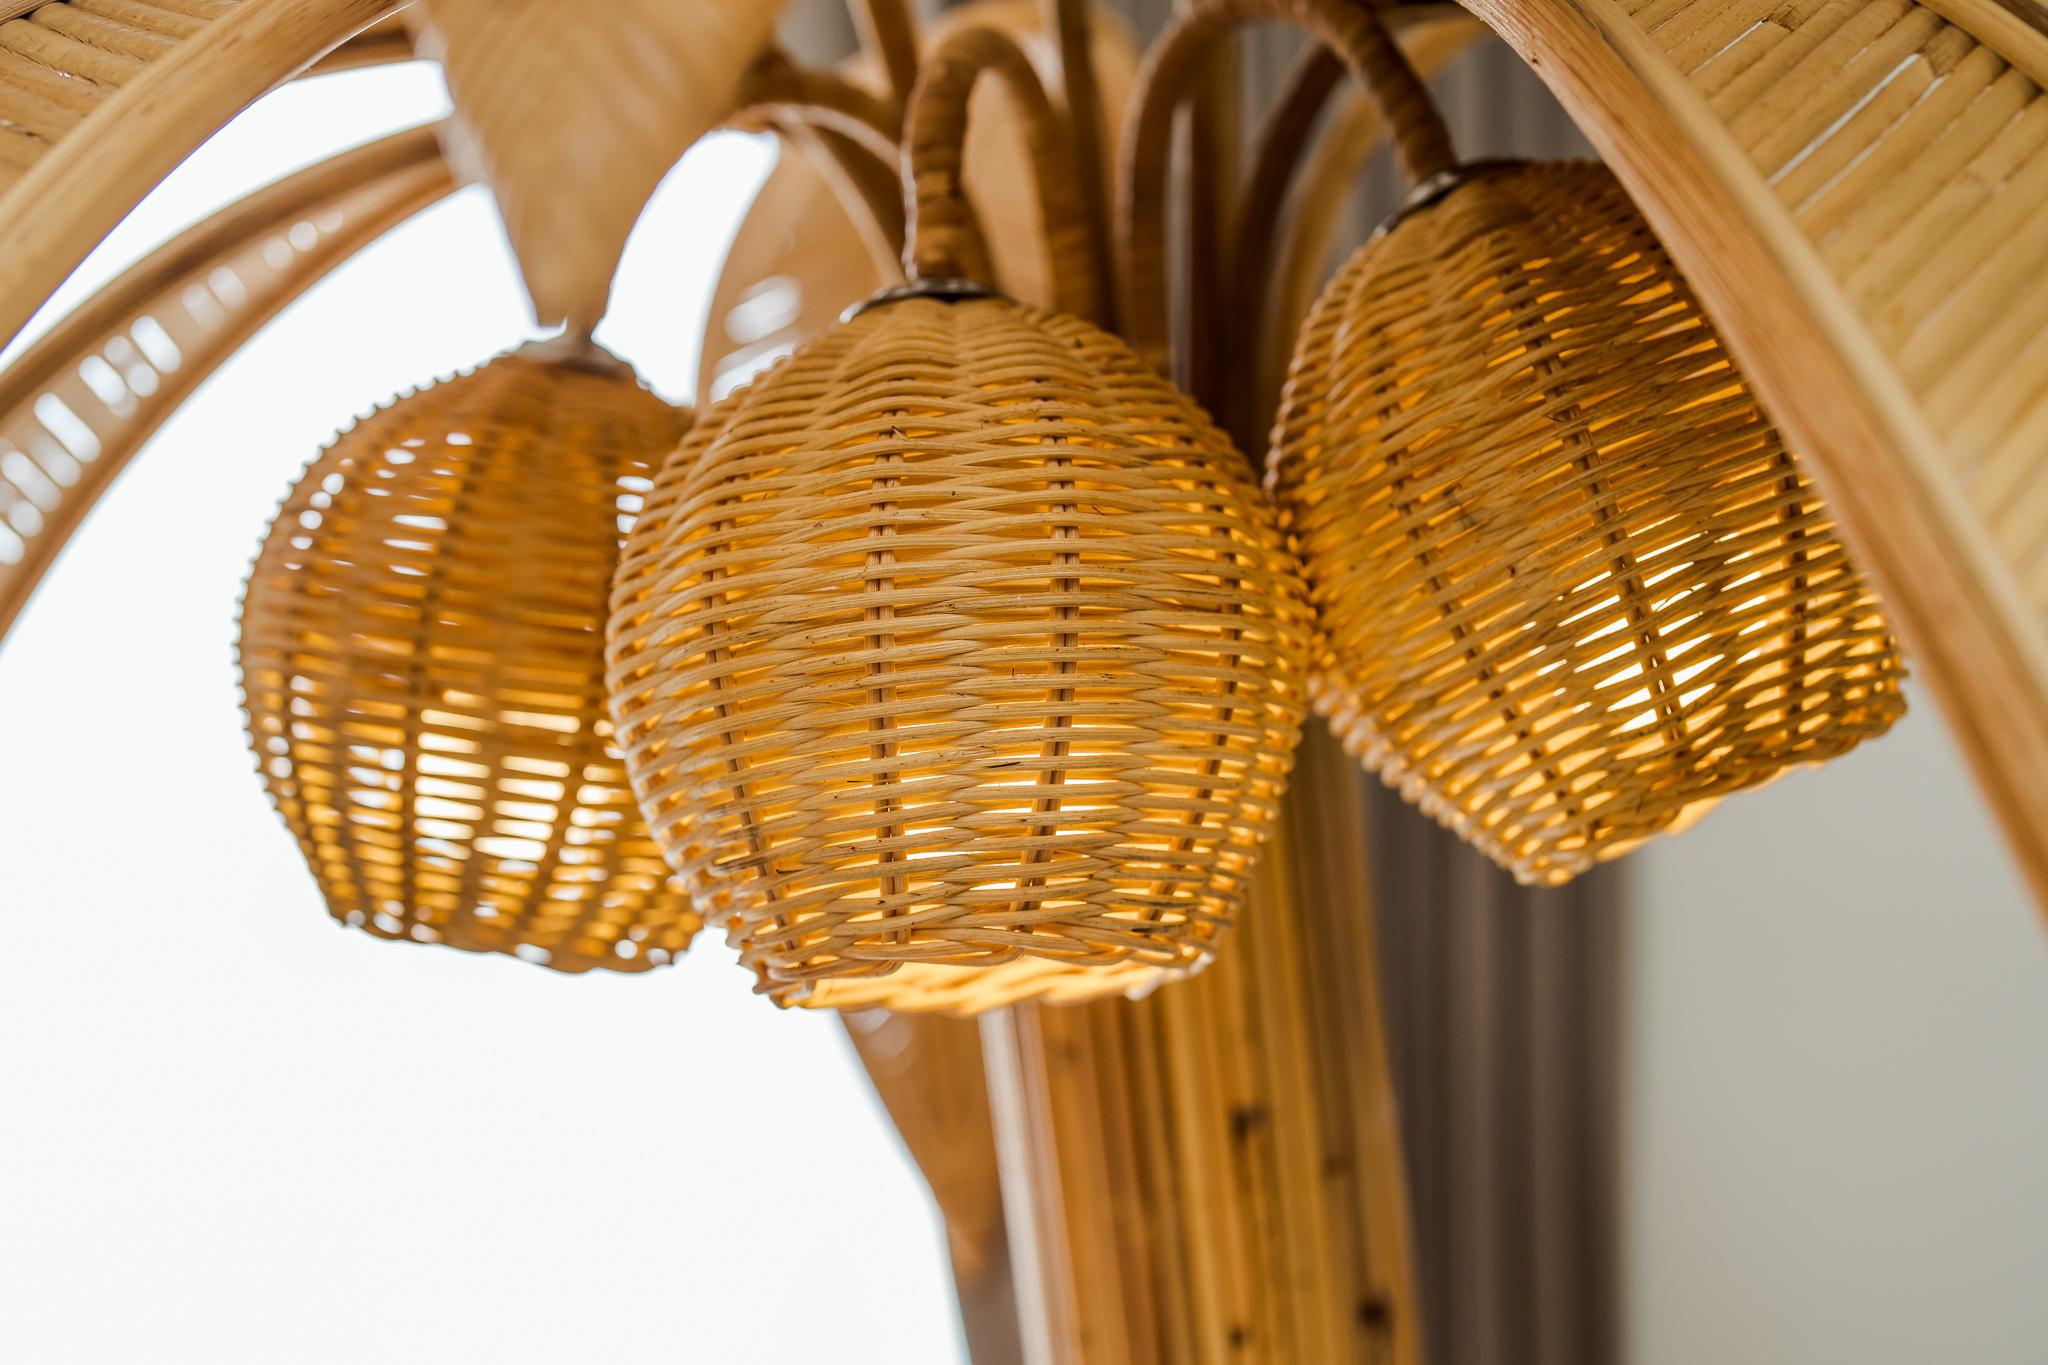 Erstaunliche Rattan-Stehleuchte mit zehn verstellbaren Palmen und Lichtern in den 3 Kokosnüssen.
Sehr dekorativ, diese Stehlampe ist ein Versprechen von Urlaub und Sonne.
Hochwertige Arbeiten, alle handgefertigt, ausgezeichneter Zustand. 